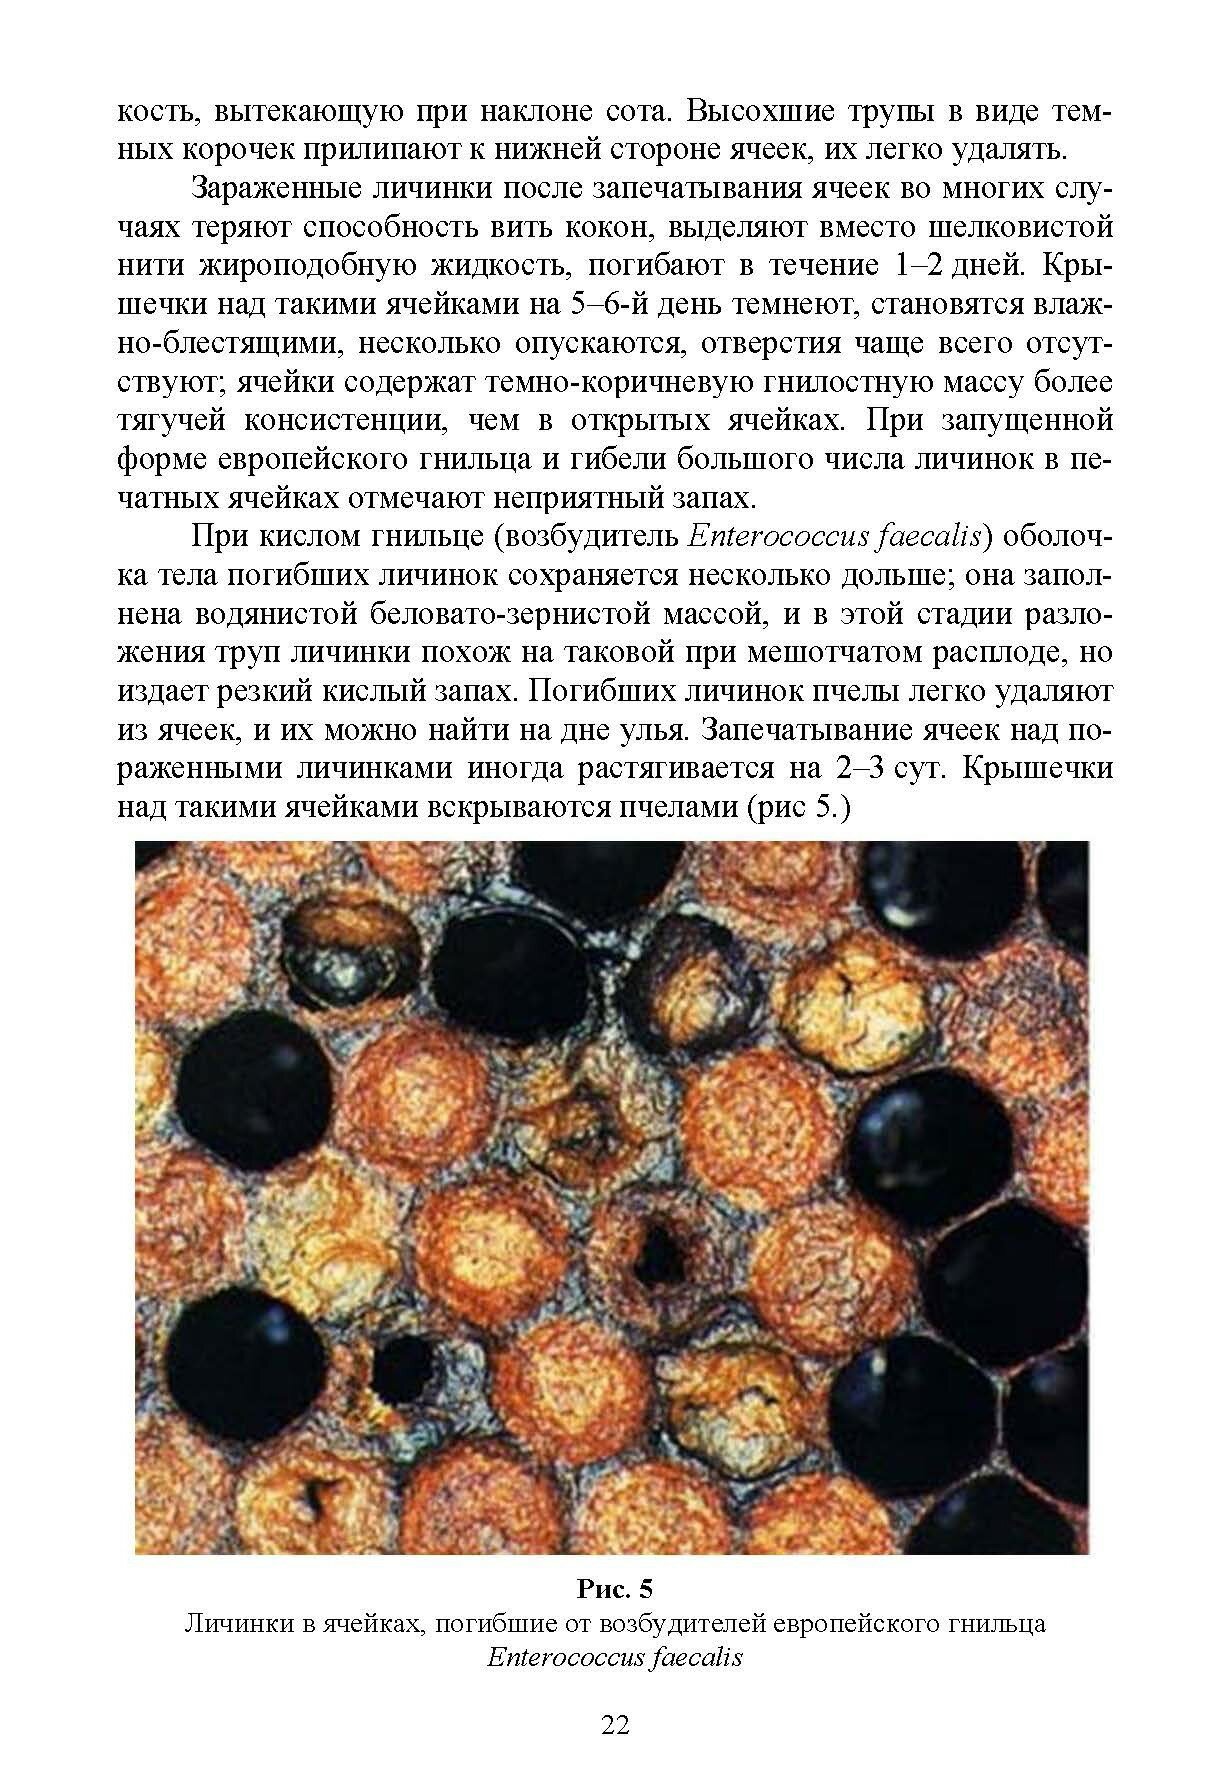 Болезни и вредители медоносных пчел - фото №5